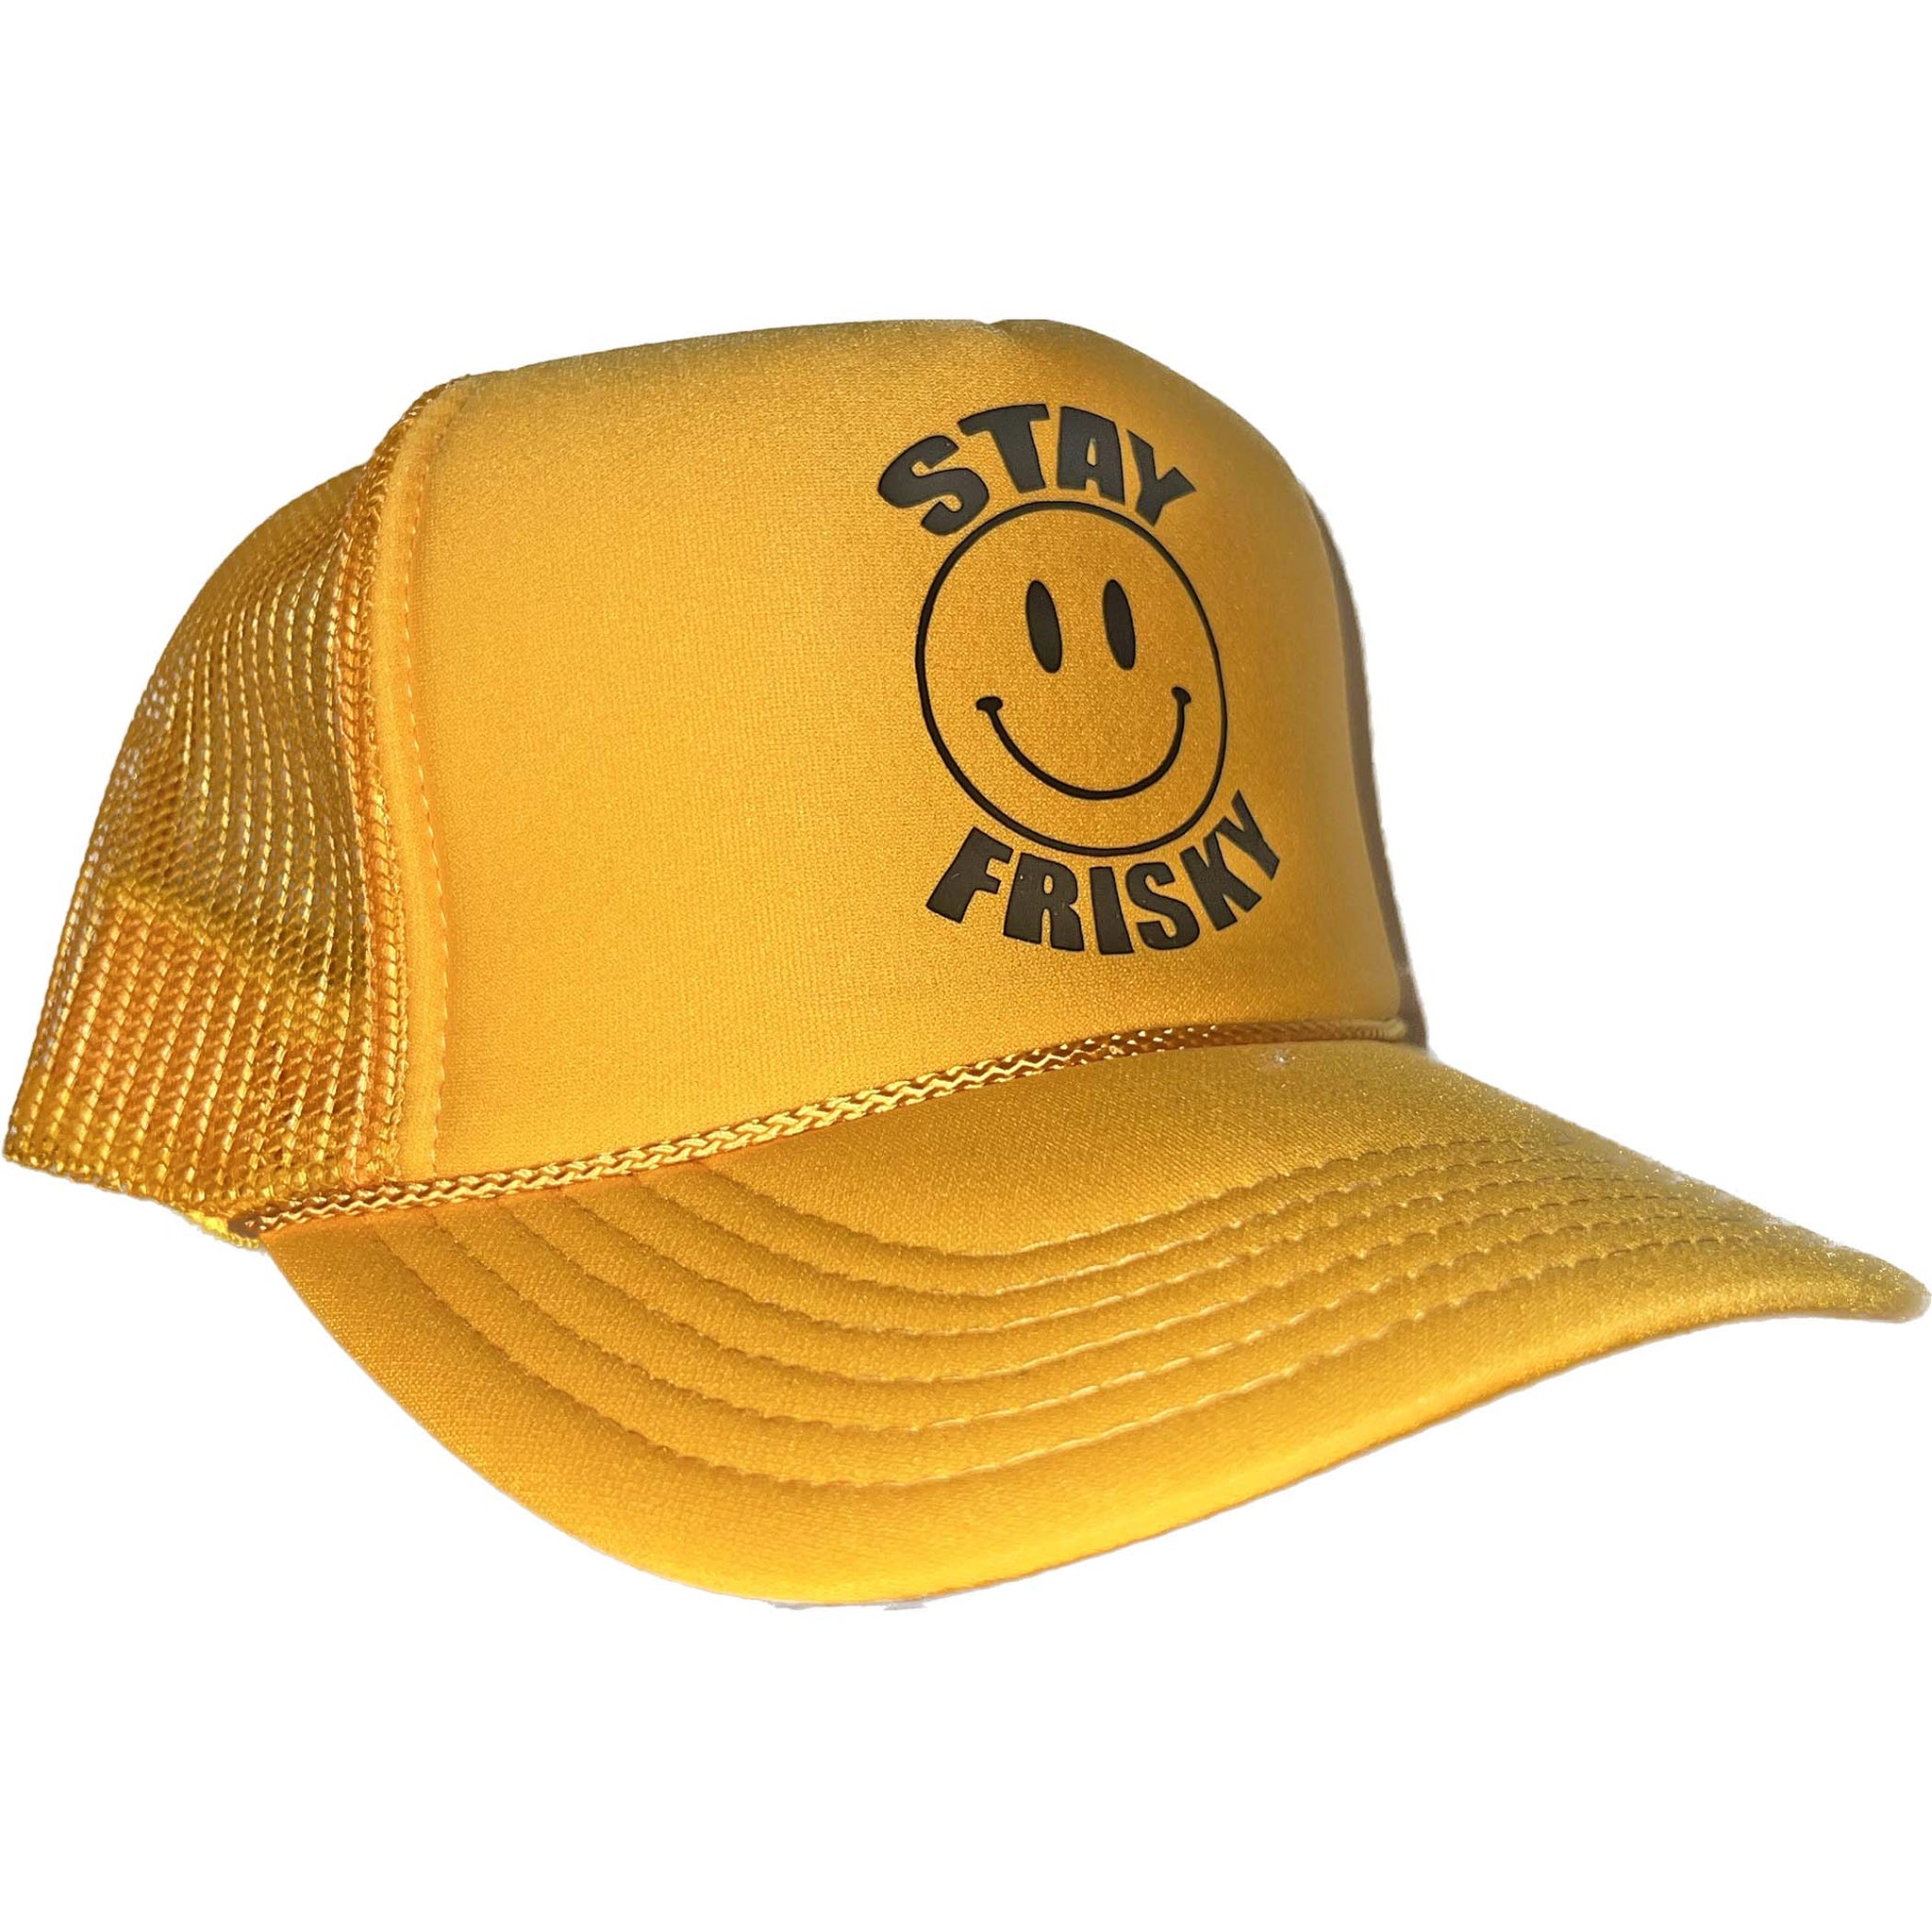 STAY FRISKY TRUCKER HAT